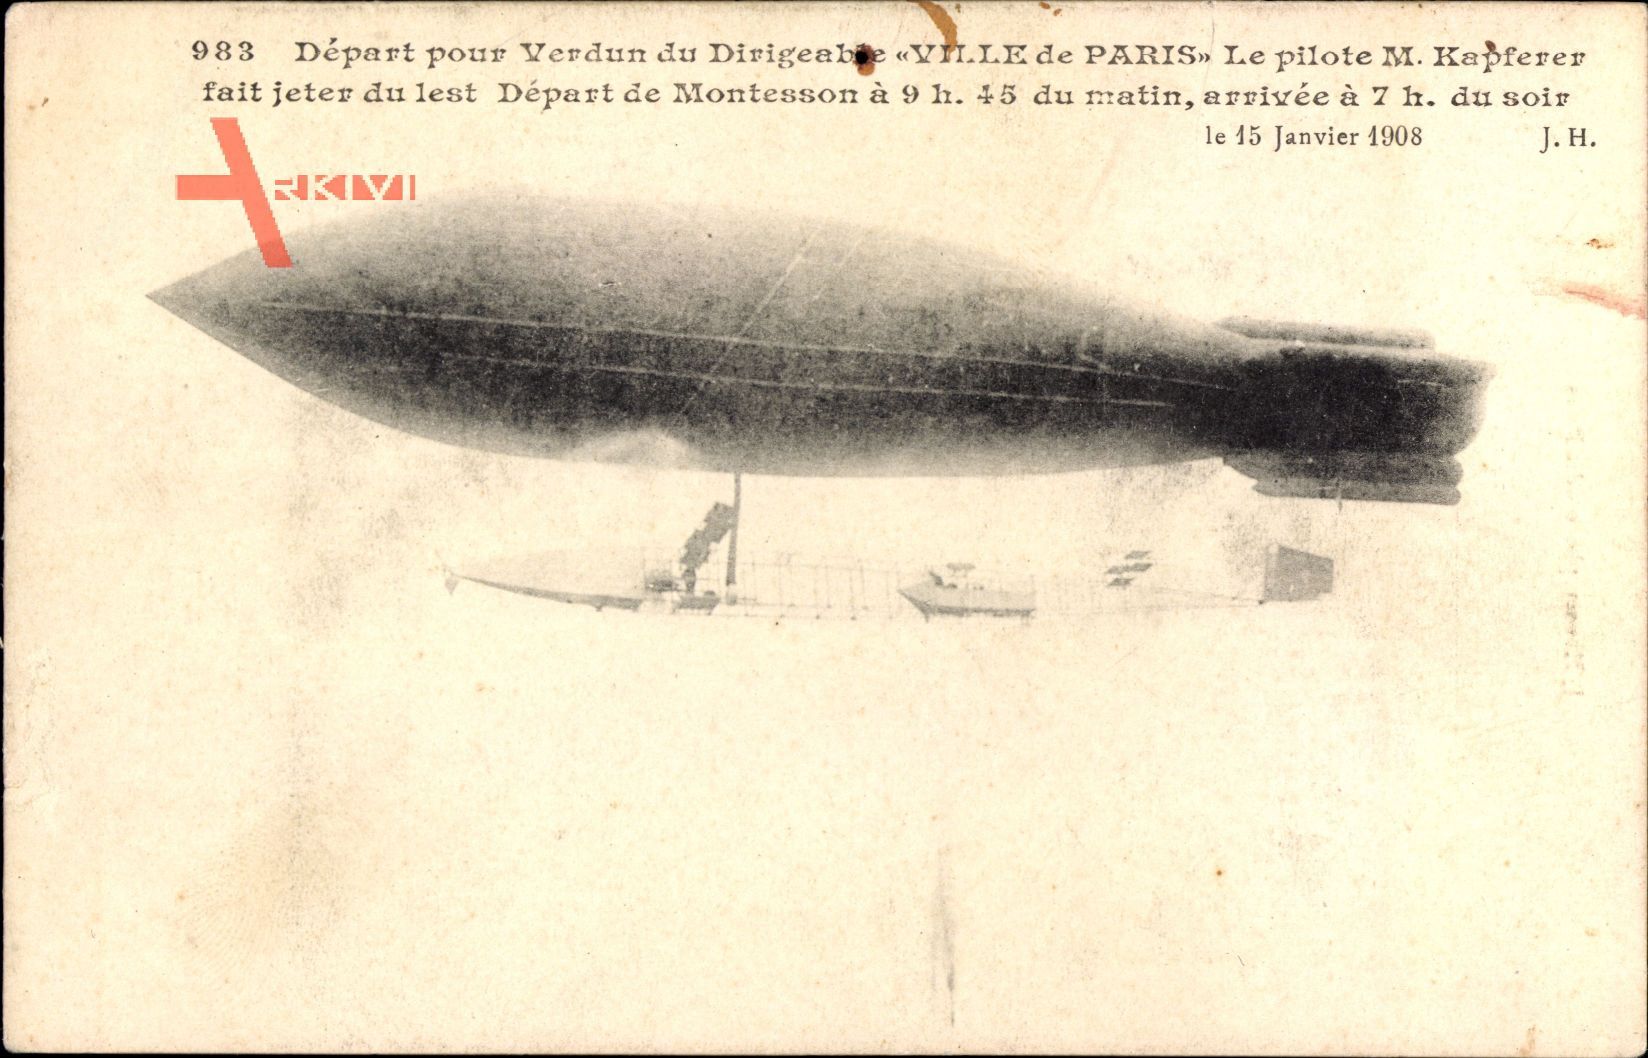 Départ pour Verdun du Dirigéable Ville de Paris, Kapferer, Montesson